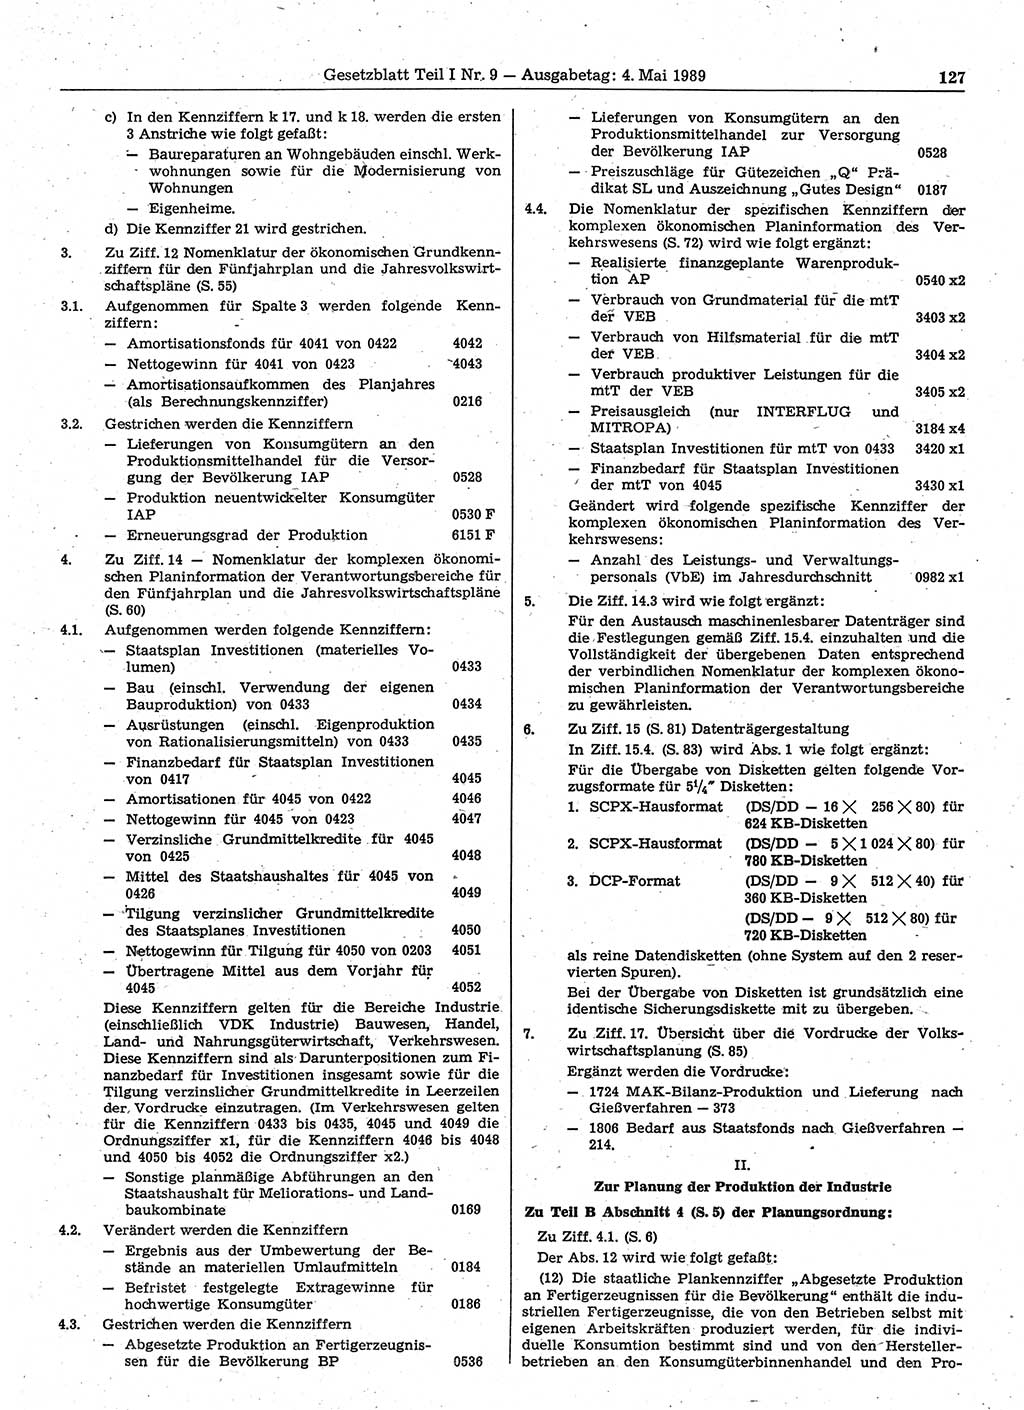 Gesetzblatt (GBl.) der Deutschen Demokratischen Republik (DDR) Teil Ⅰ 1989, Seite 127 (GBl. DDR Ⅰ 1989, S. 127)